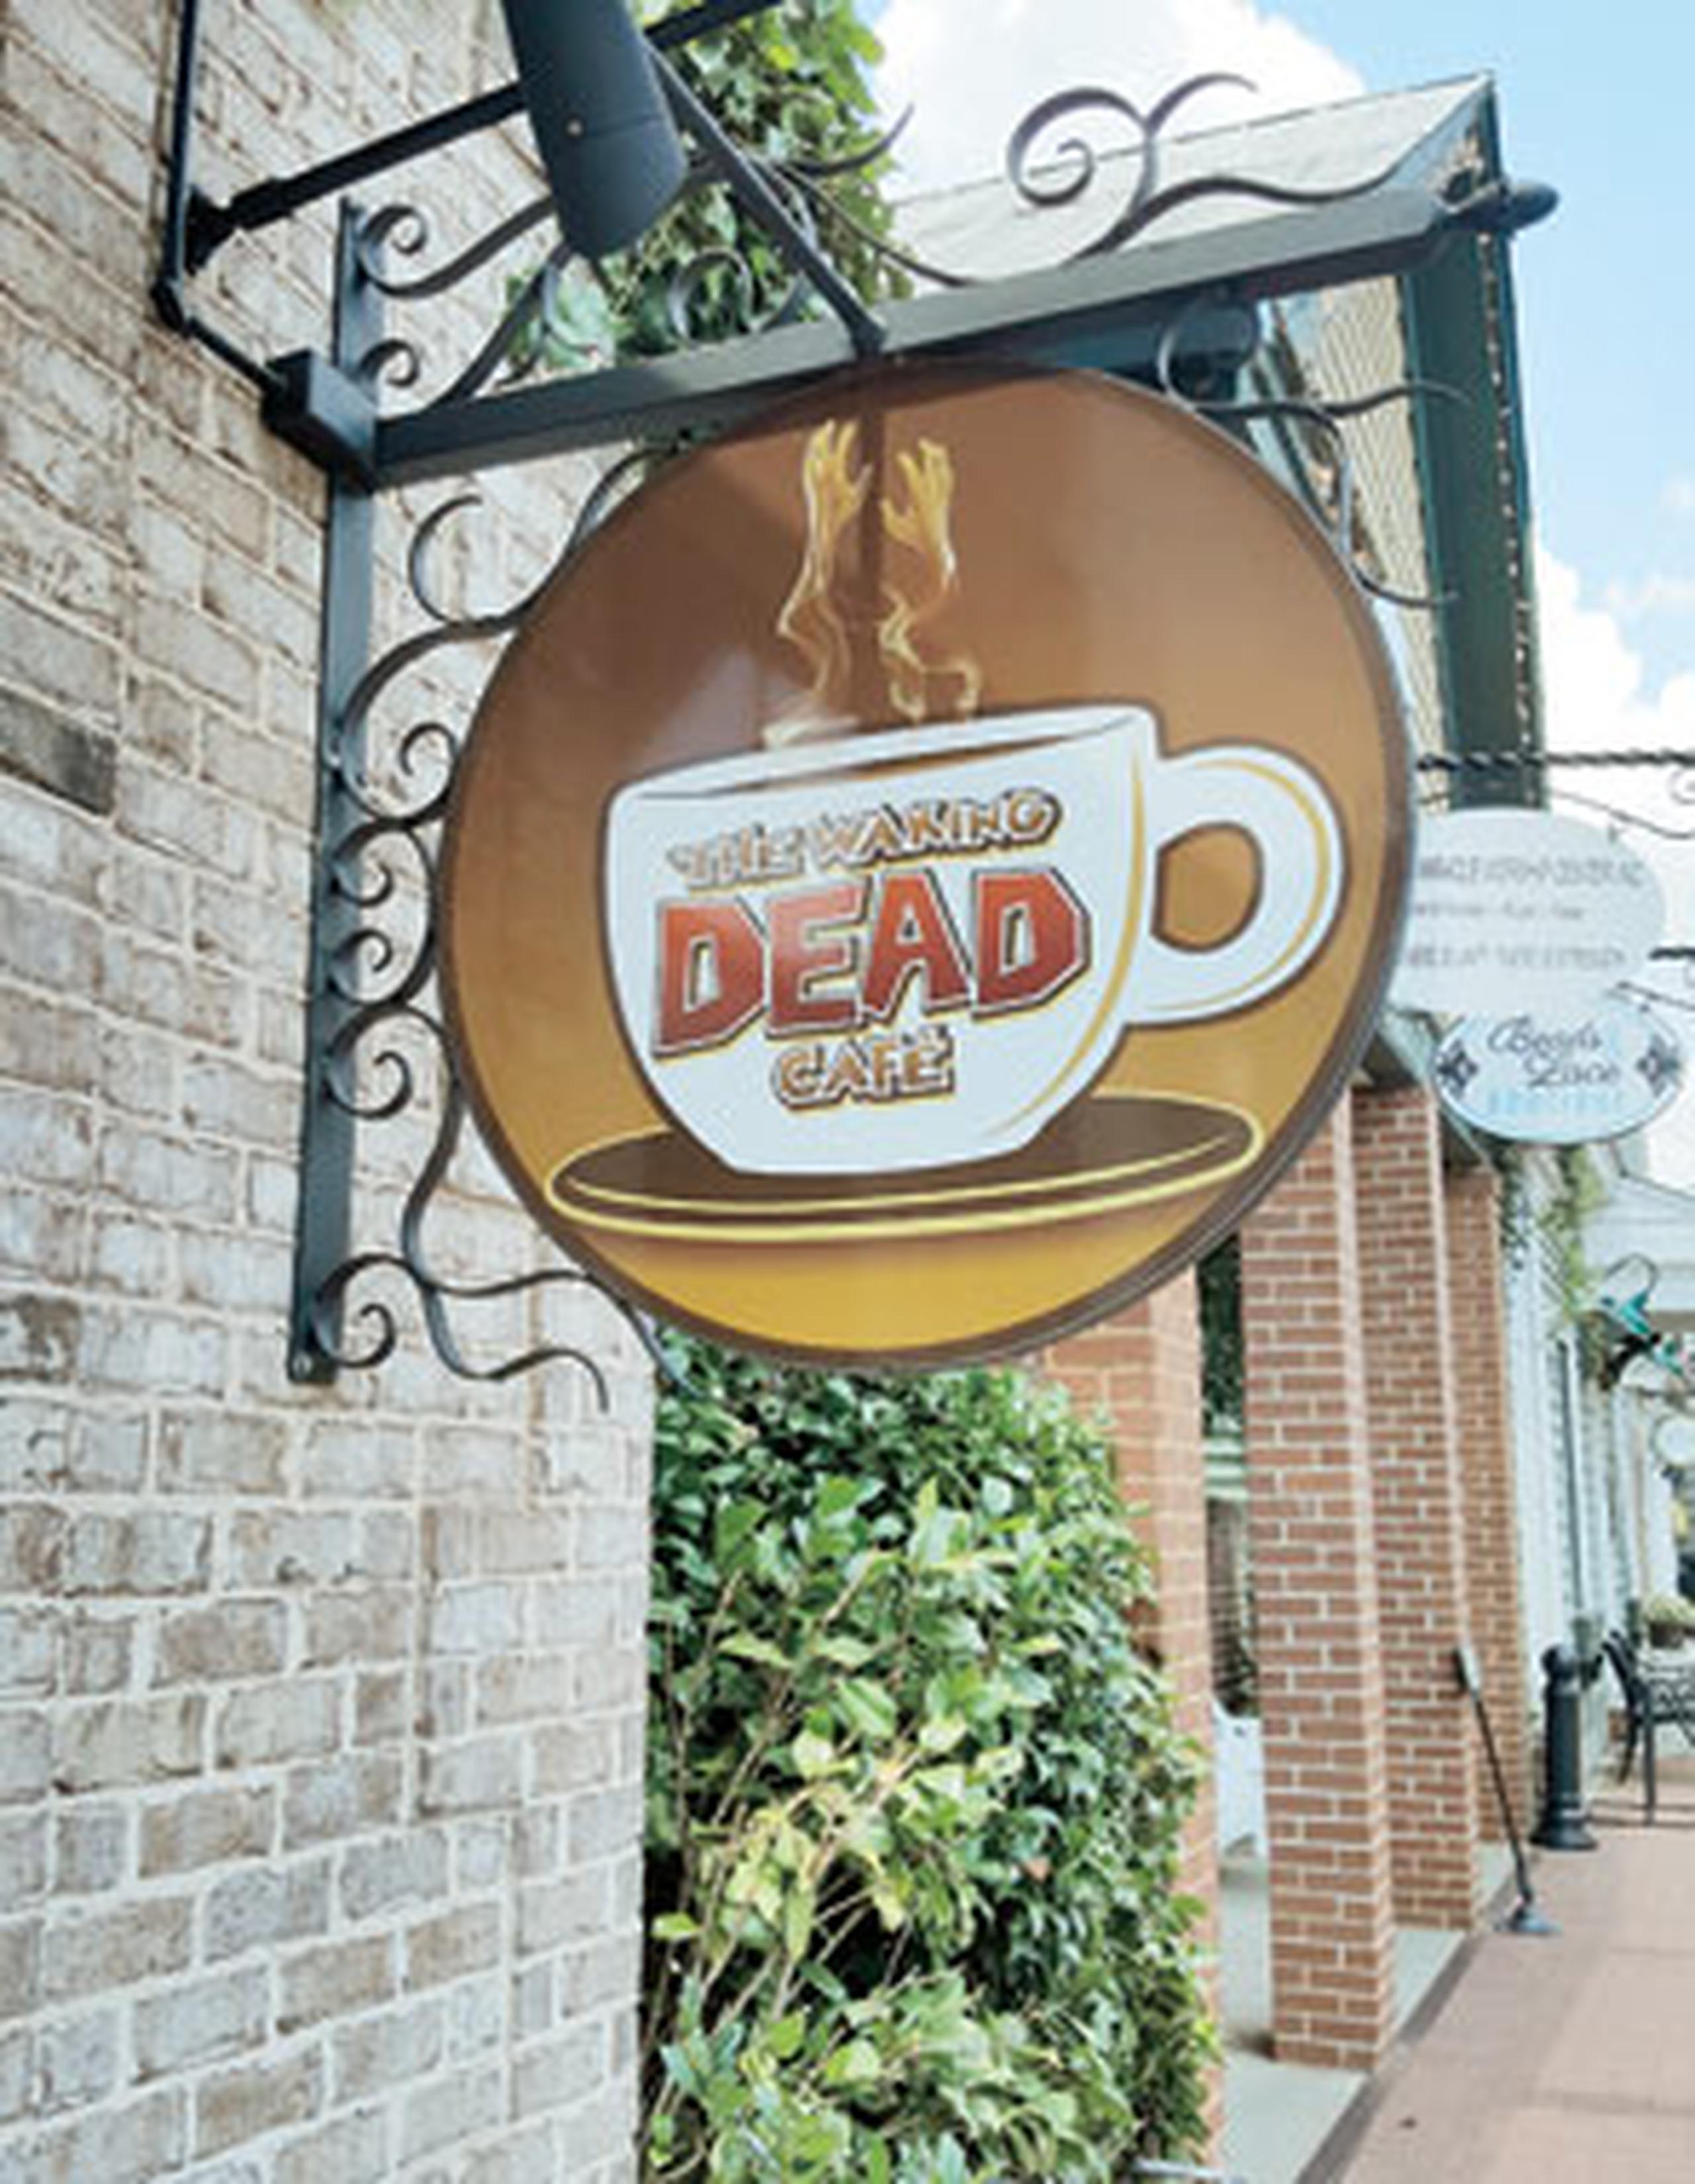 En Senoia está ubicada la tienda The Official Walking Dead Store y el local The Waking Dead Café, cuyas bebidas y platos llevan los nombres de los personajes principales de la saga.  (melba.brugueras@primerahora.com)